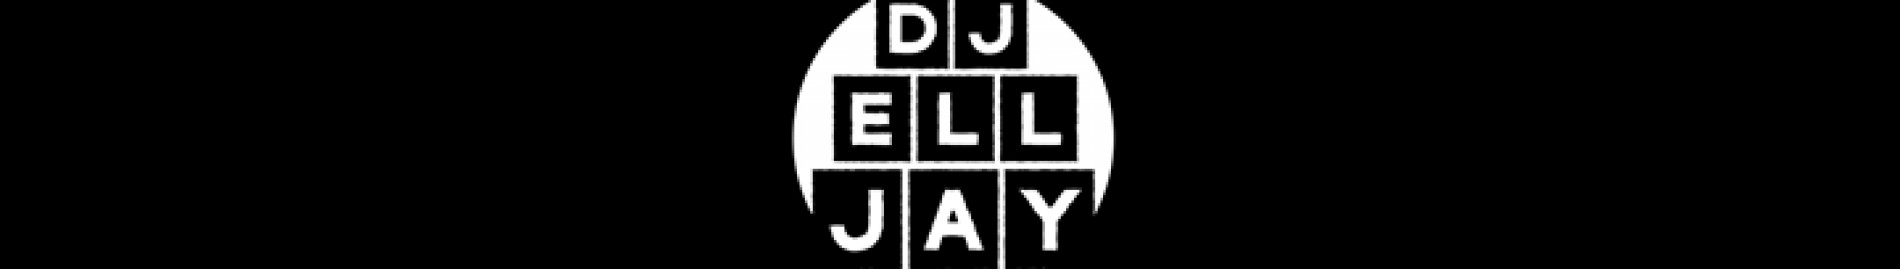 DJ ELL JAY